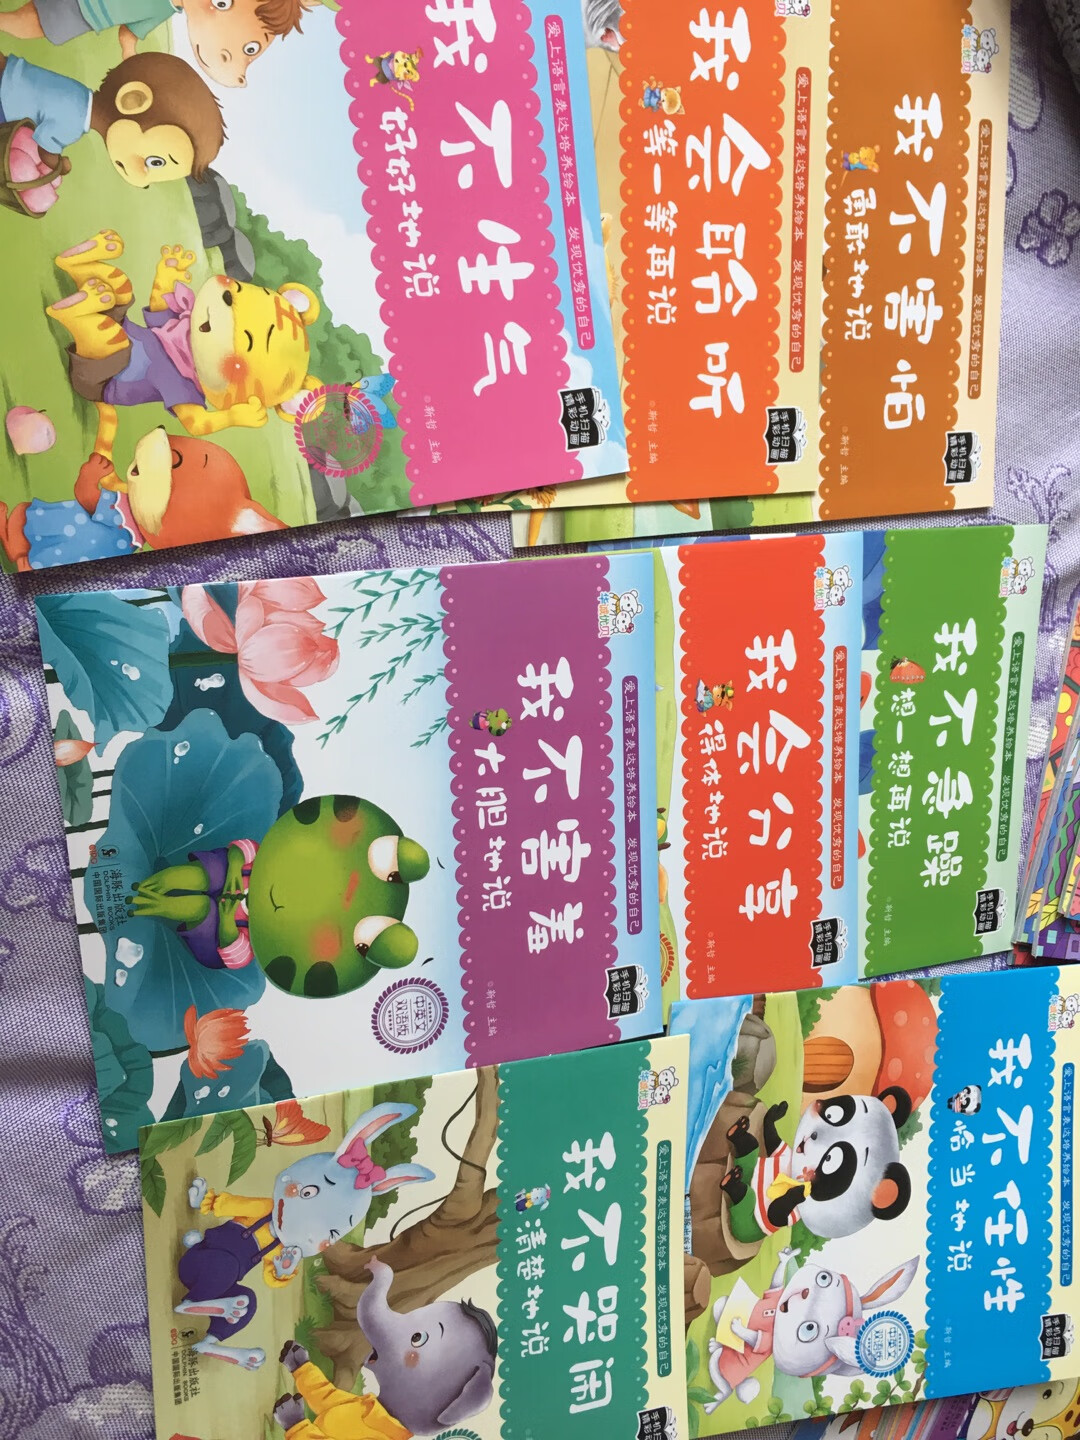 这本书是双语的哦！~扫描二维码，有视频动画片一个女生讲故事也是一句中文一句英文英文发音挺清晰标准但不口语那种地道小动物画得很可爱！故事也可以培养宝宝性格习惯